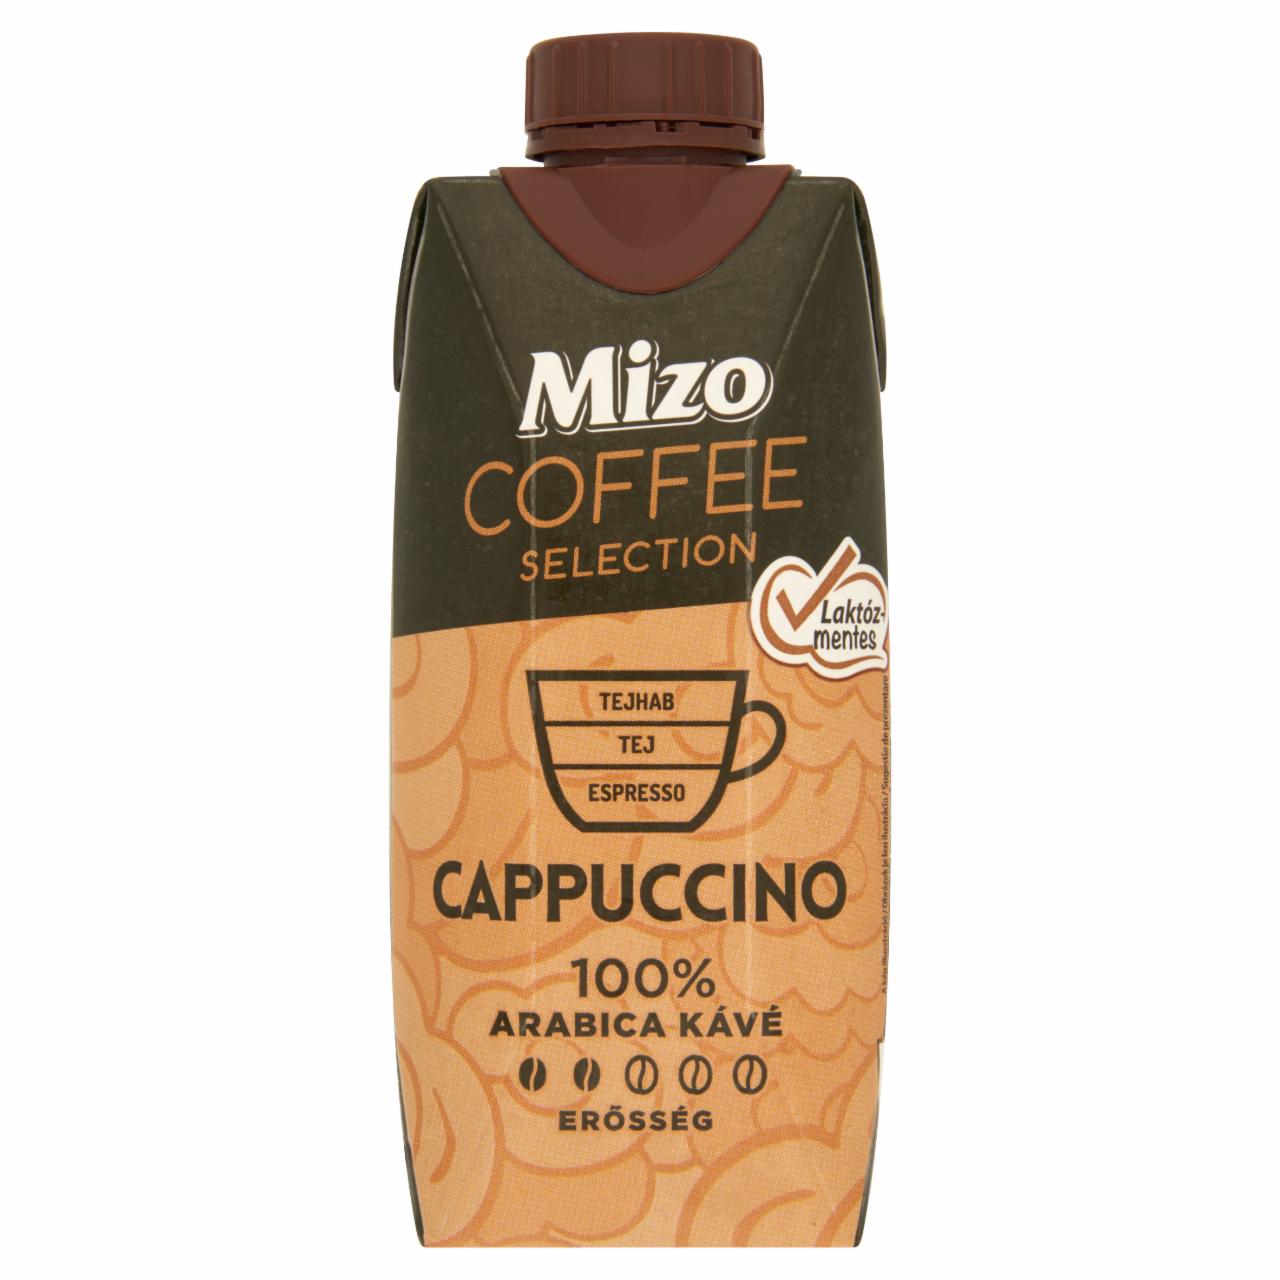 Fotografie - Coffee Selection Cappuccino laktózmentes Mizo